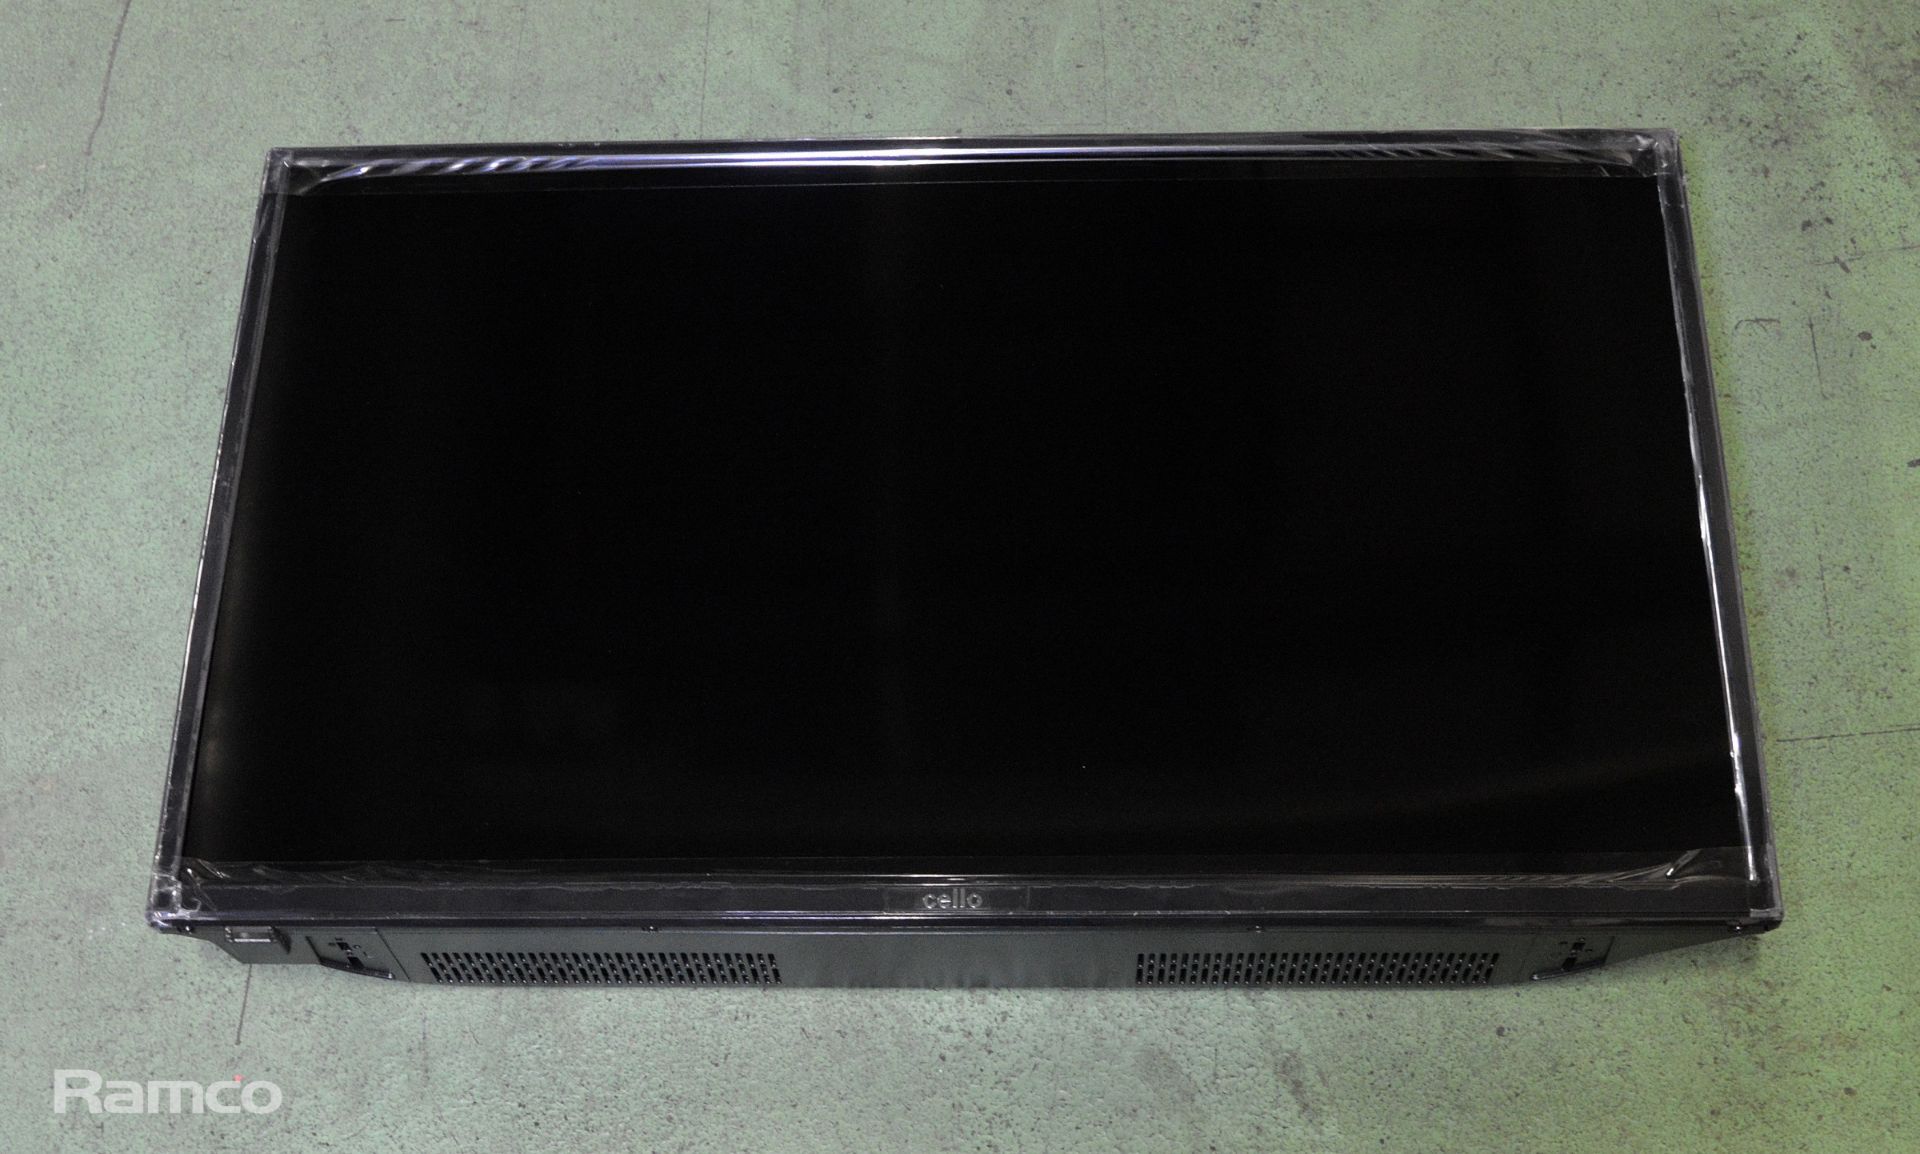 Cello 32 inch widescreen LED TV with DVB - C3220DVB V2/ZBVD0223 V2